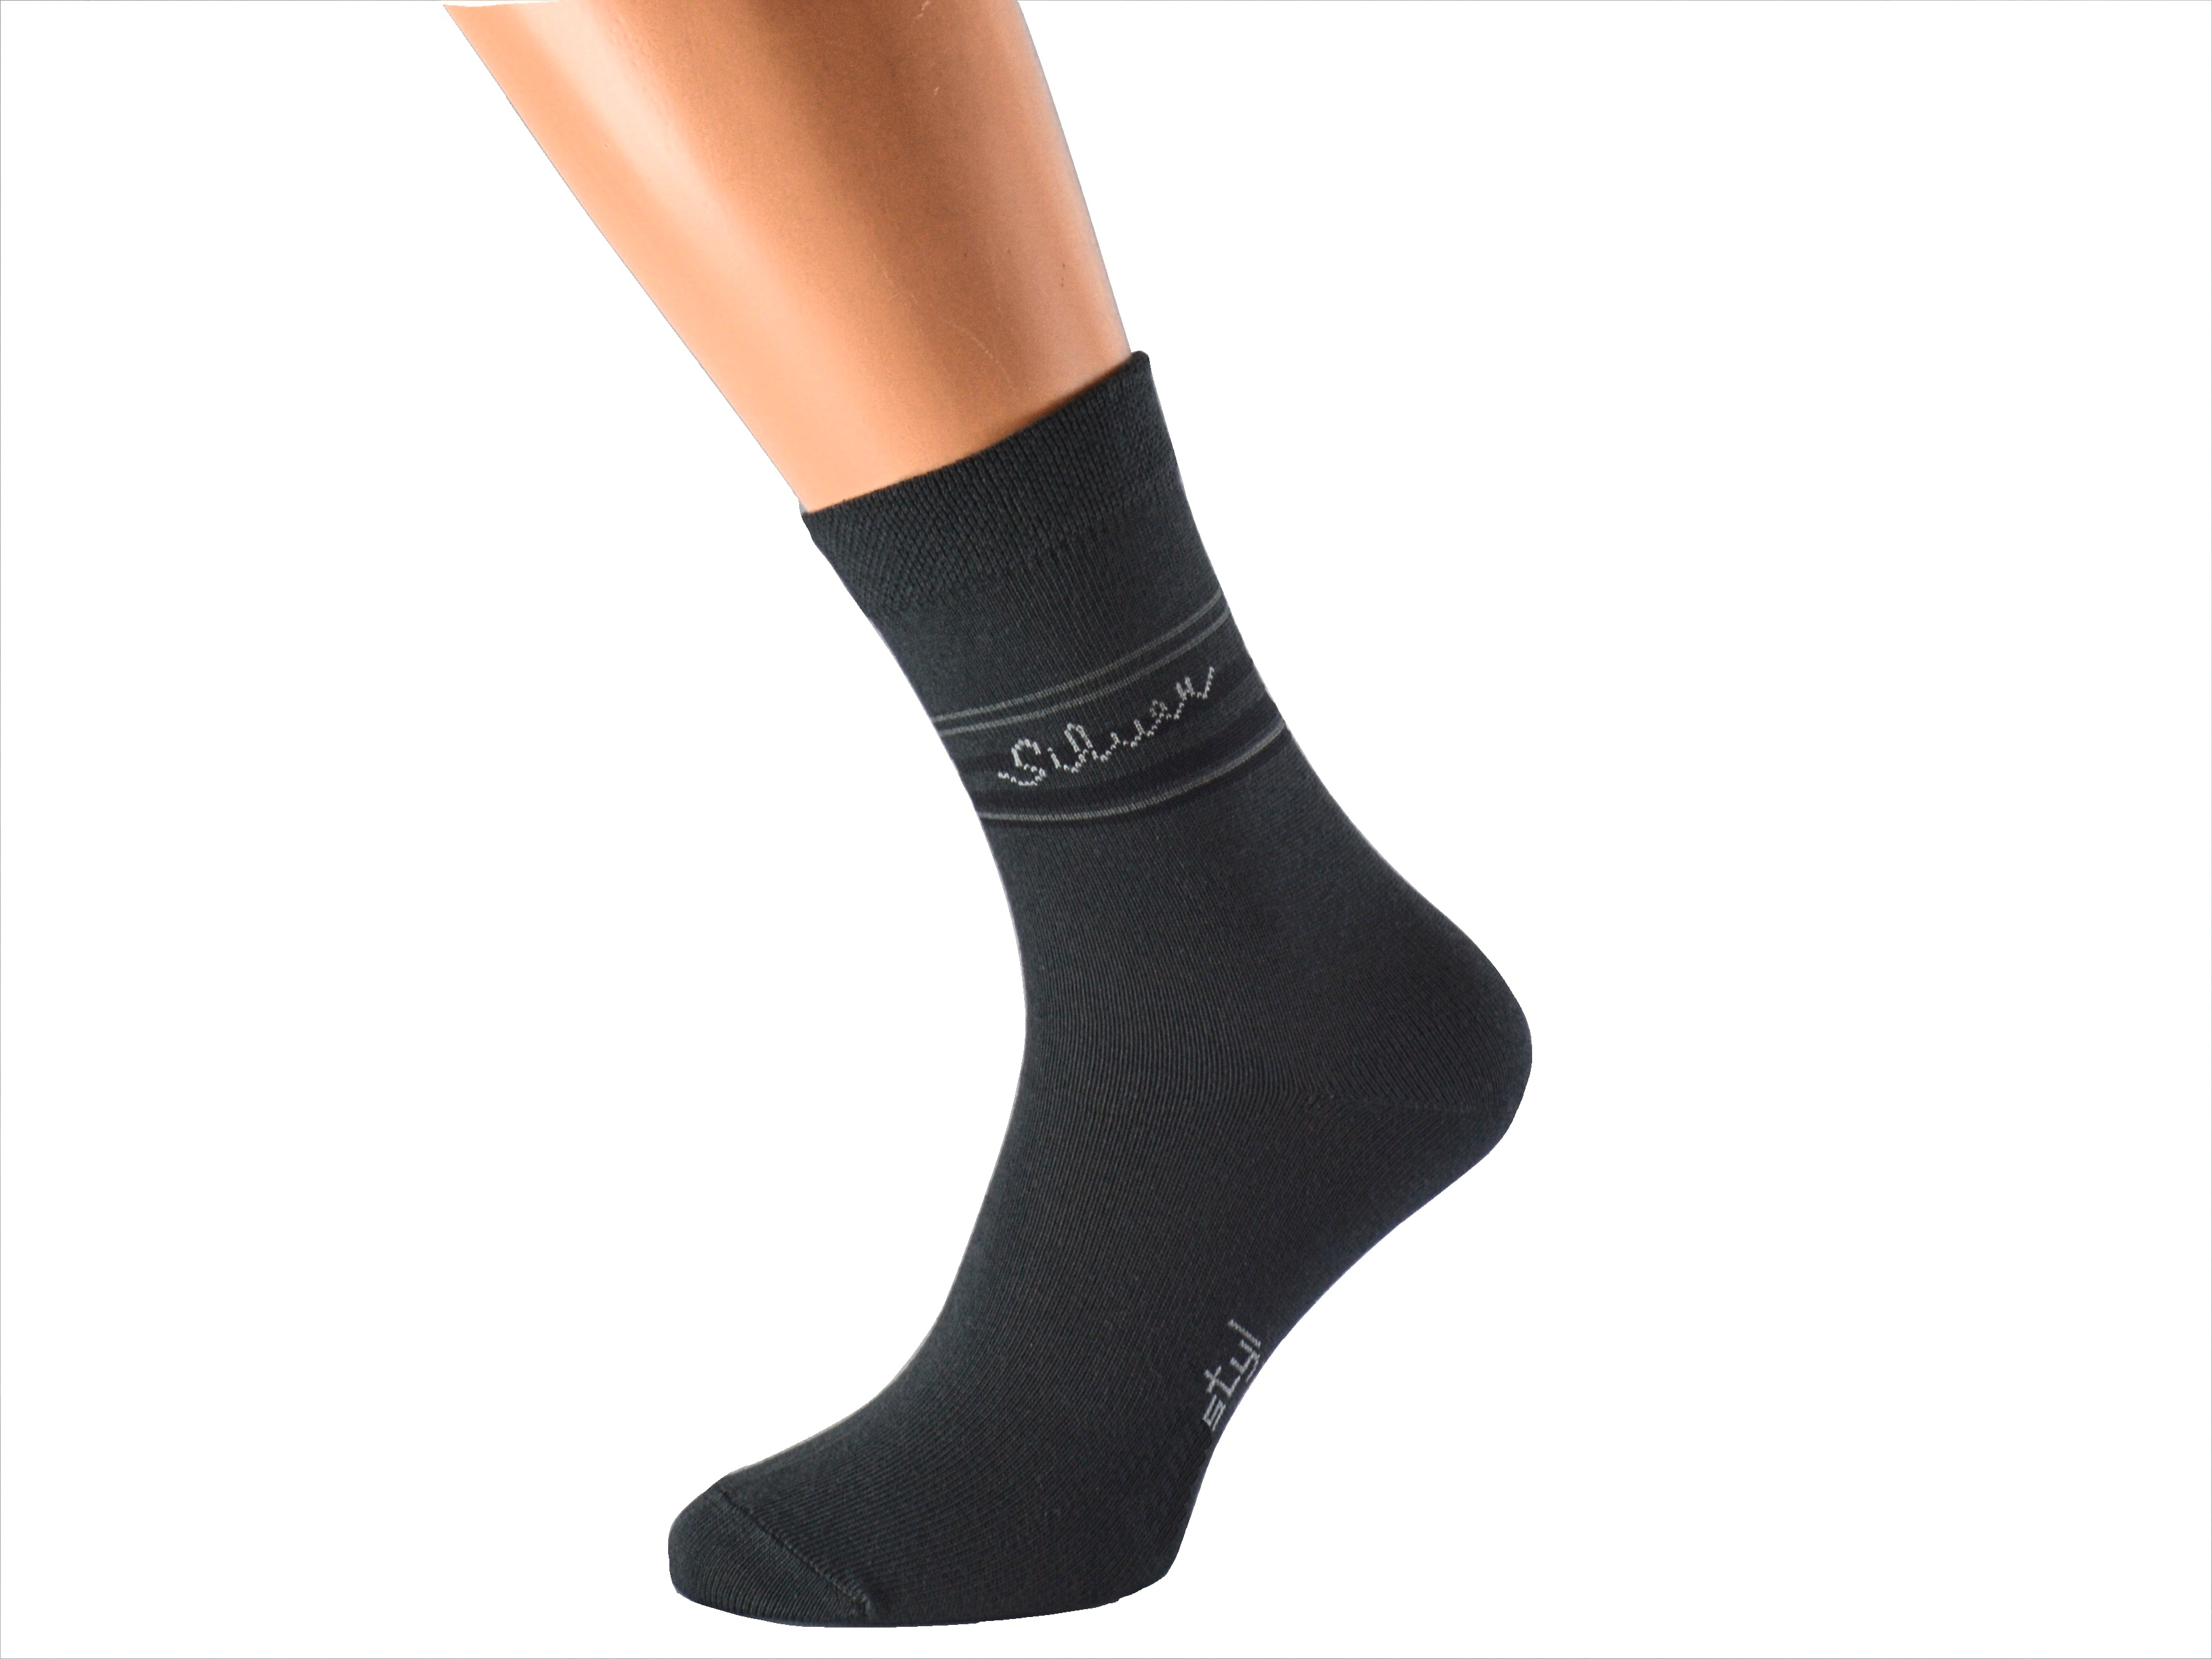 Ponožky se stříbrem proti pocení SILVER KUKS Barva: Tmavě šedé, Velikost: EUR 46-48 (UK 11-12)